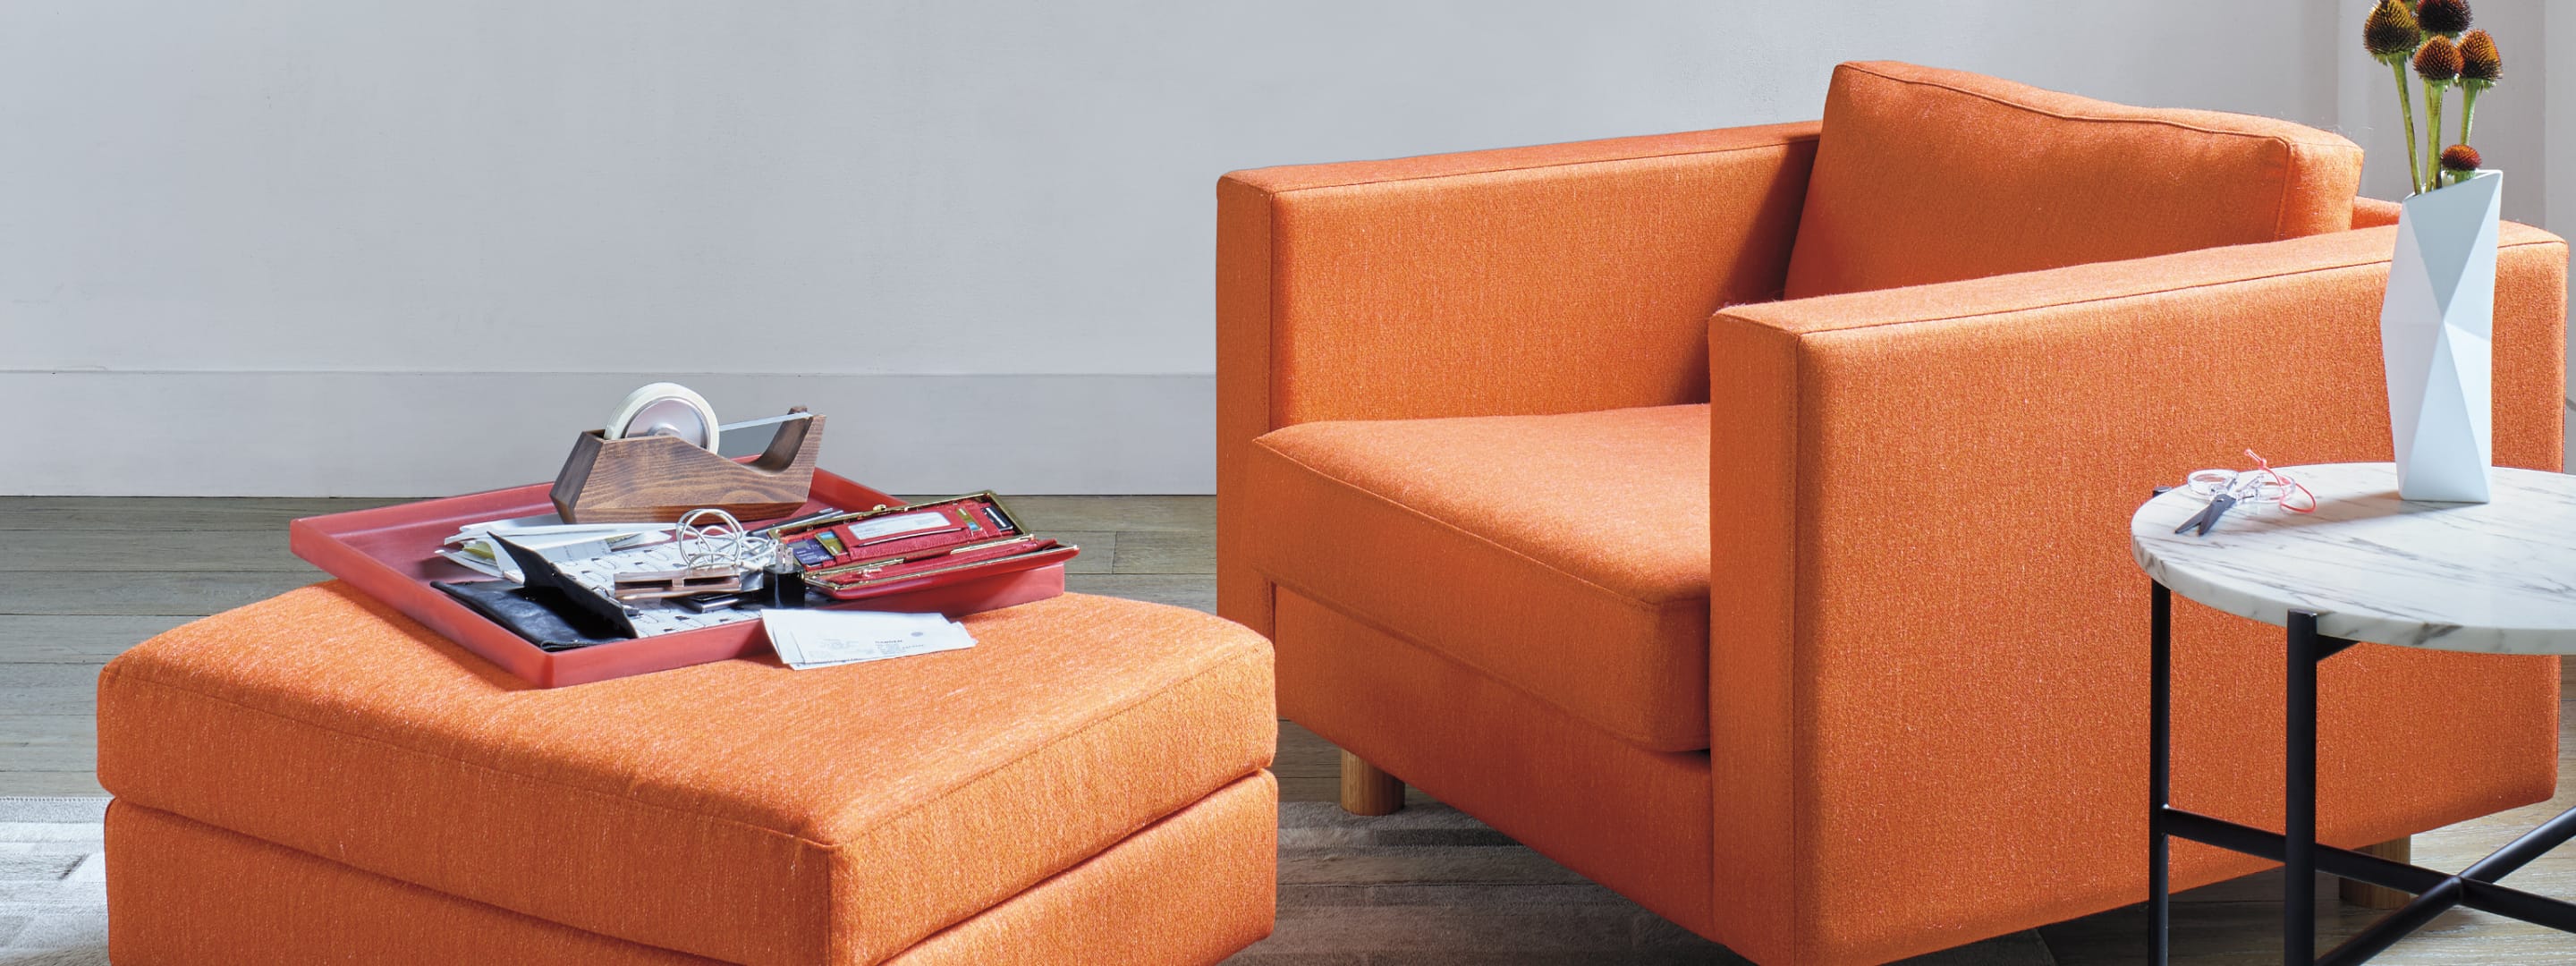 Ein farbenfroher Lispenard Lounge-Sessel und Ottomane in einem Wohnzimmer.